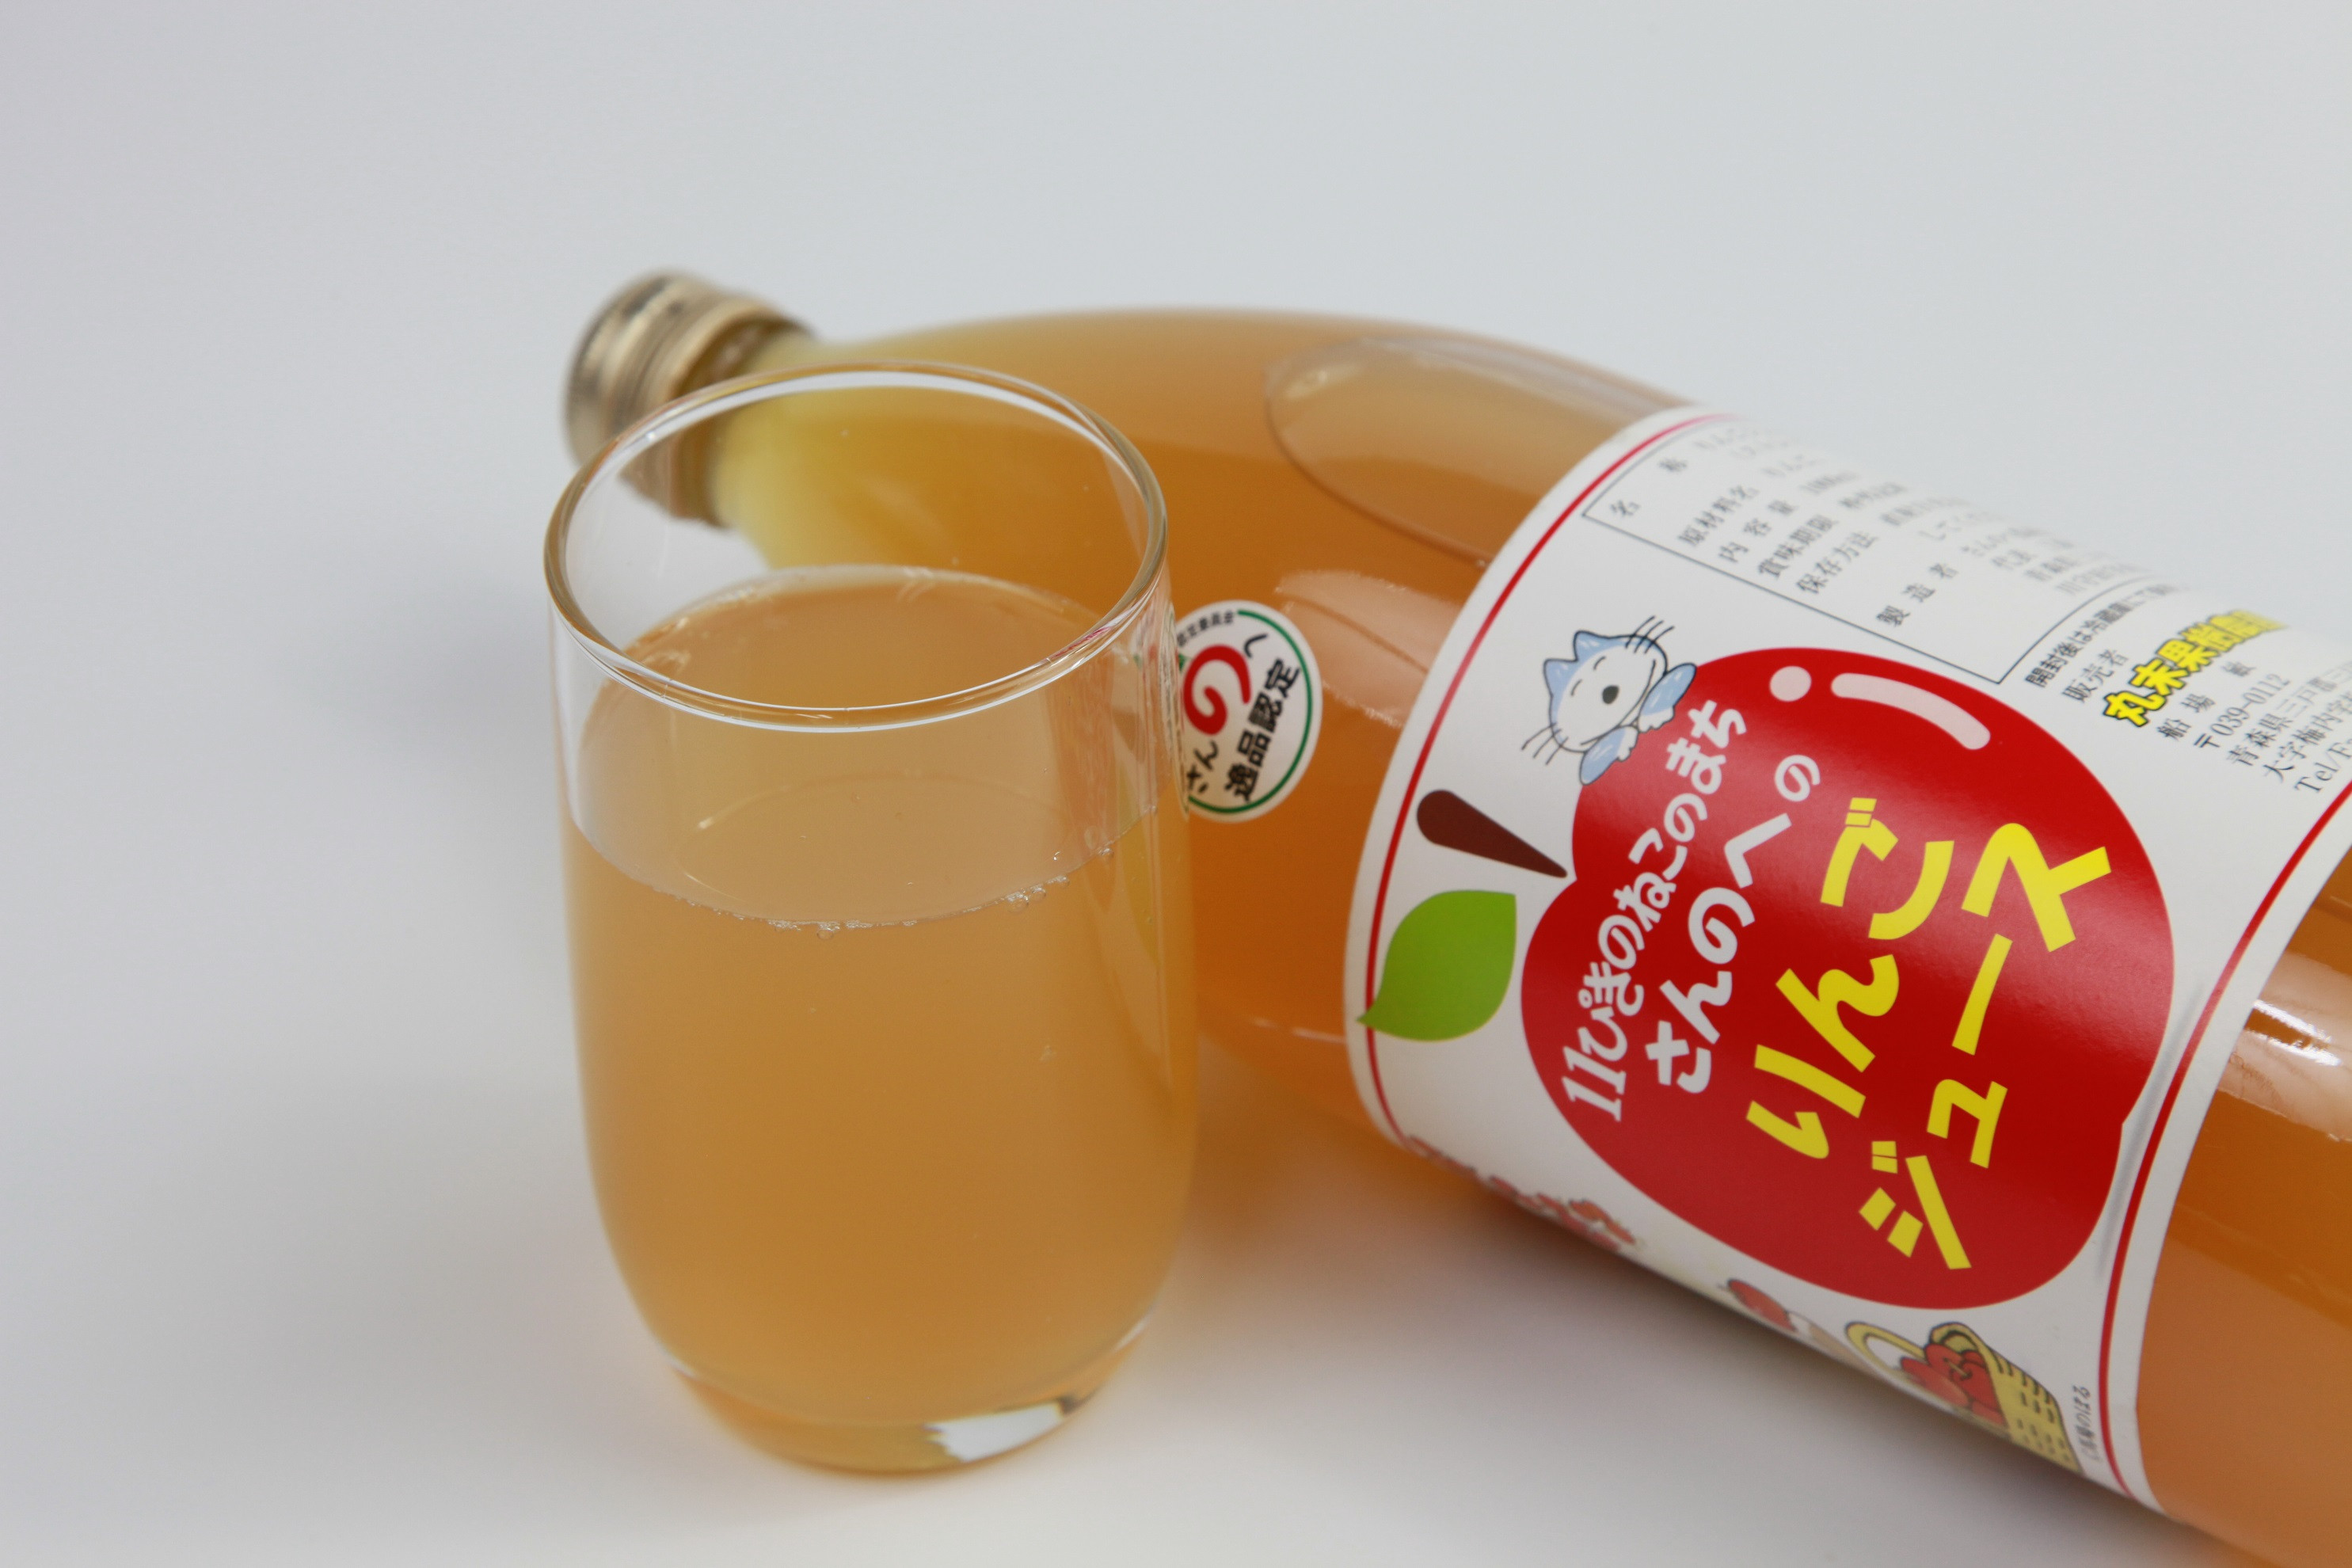 １１ぴきのねこラベル りんごジュース - 三戸町商工会